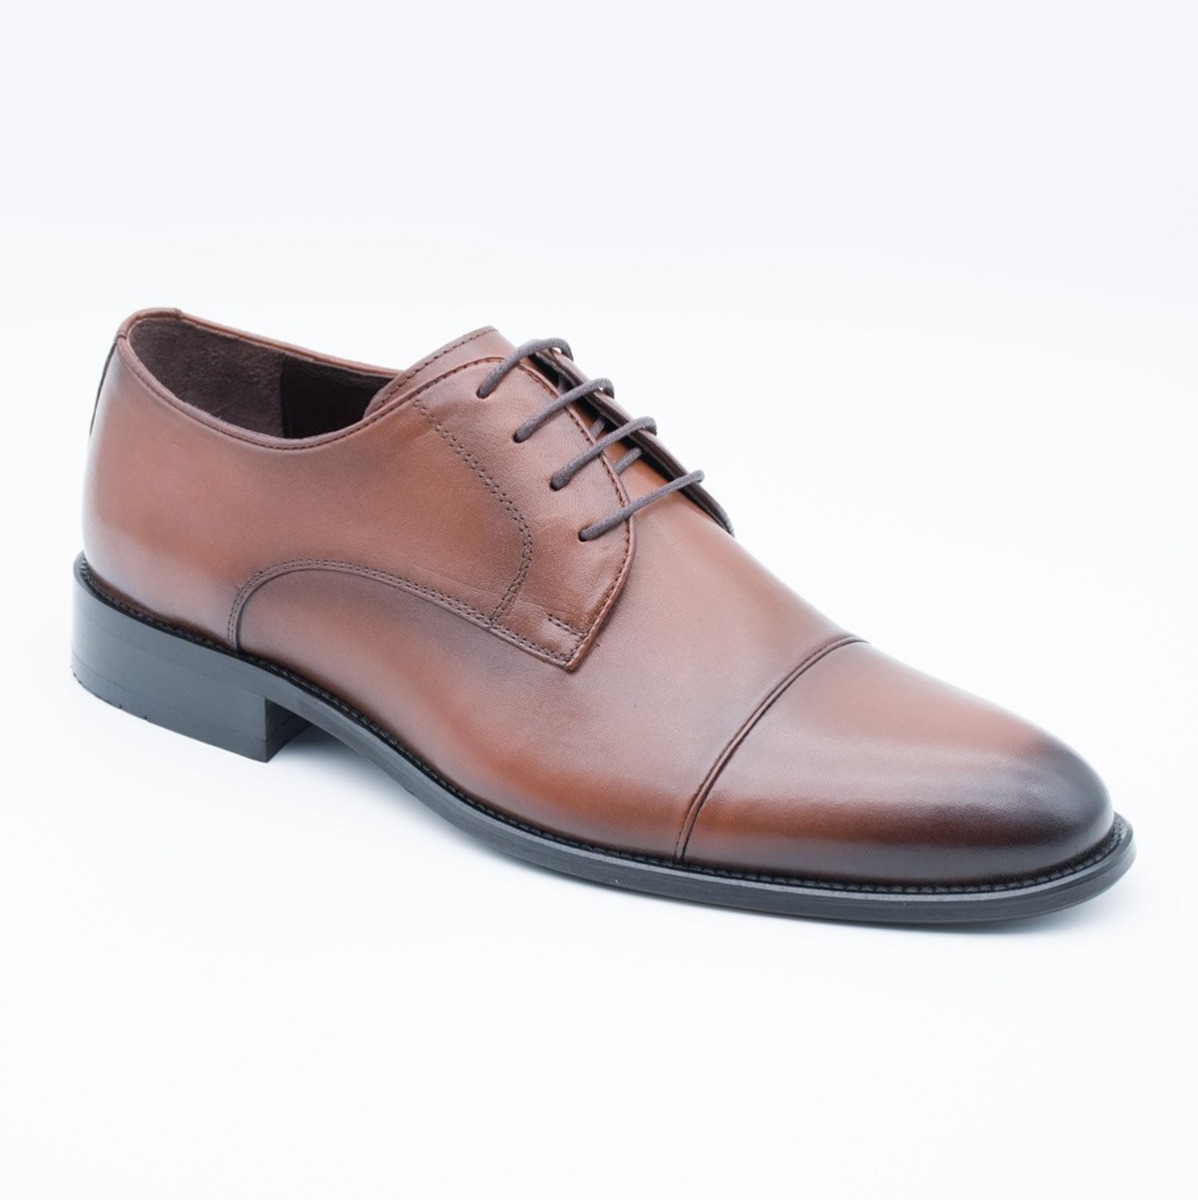 Flo Erkek Deri Klasik Ayakkabı İ17523-4 M 1000 TABA. 1